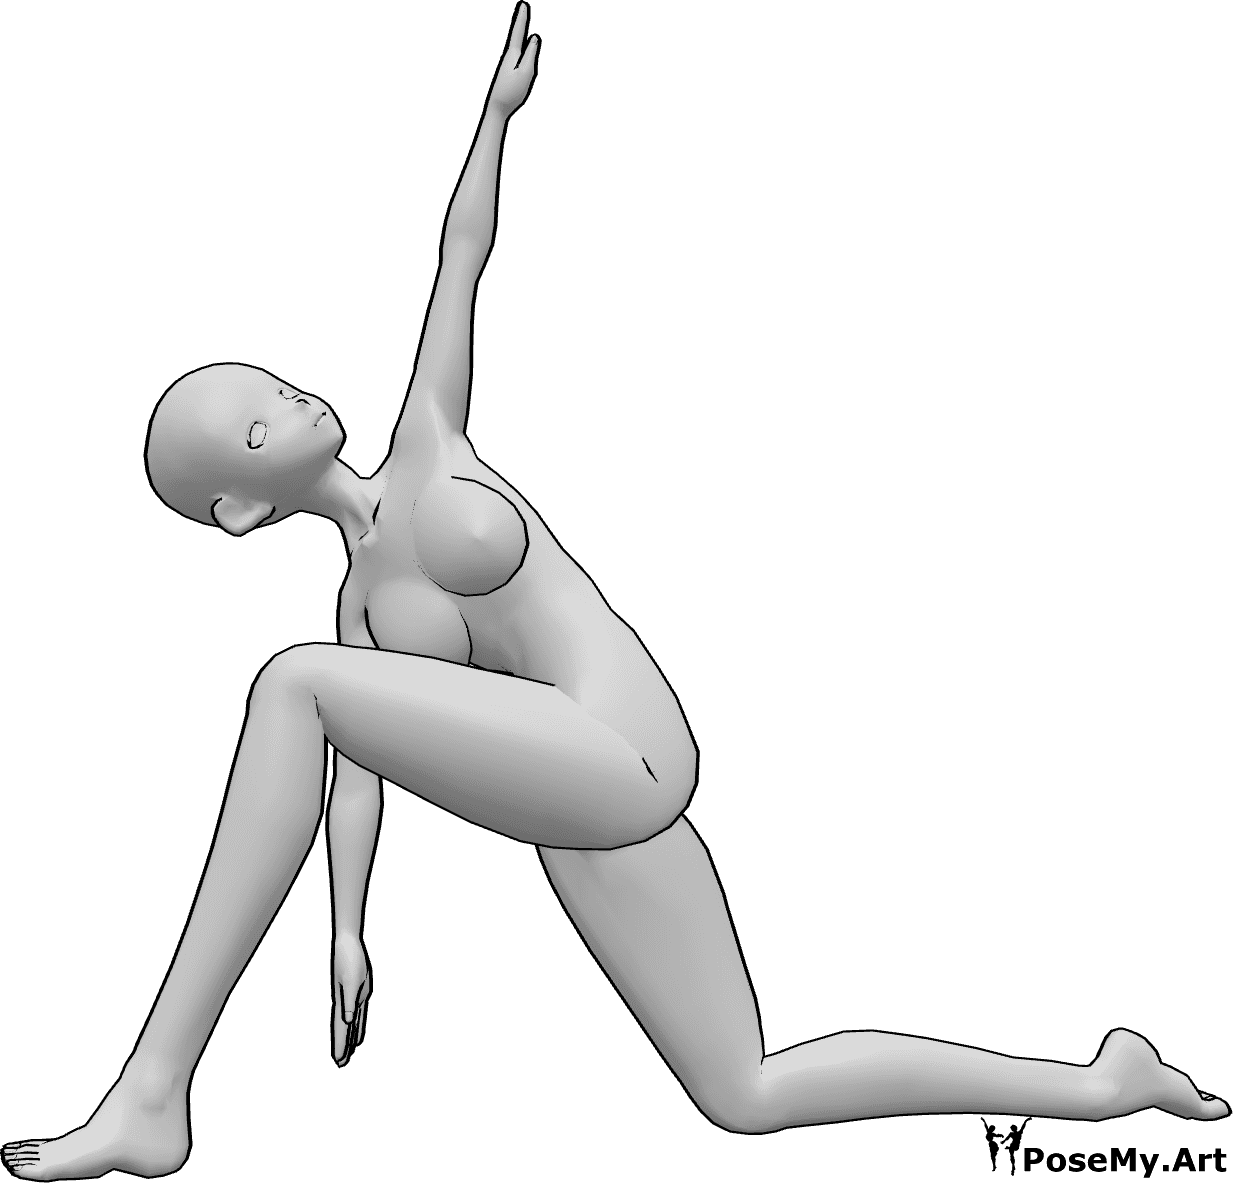 Referência de poses- Pose de ioga de anime ajoelhado - Uma mulher anime está a fazer ioga, ajoelhada e a esticar-se, levantando a mão esquerda e olhando para cima